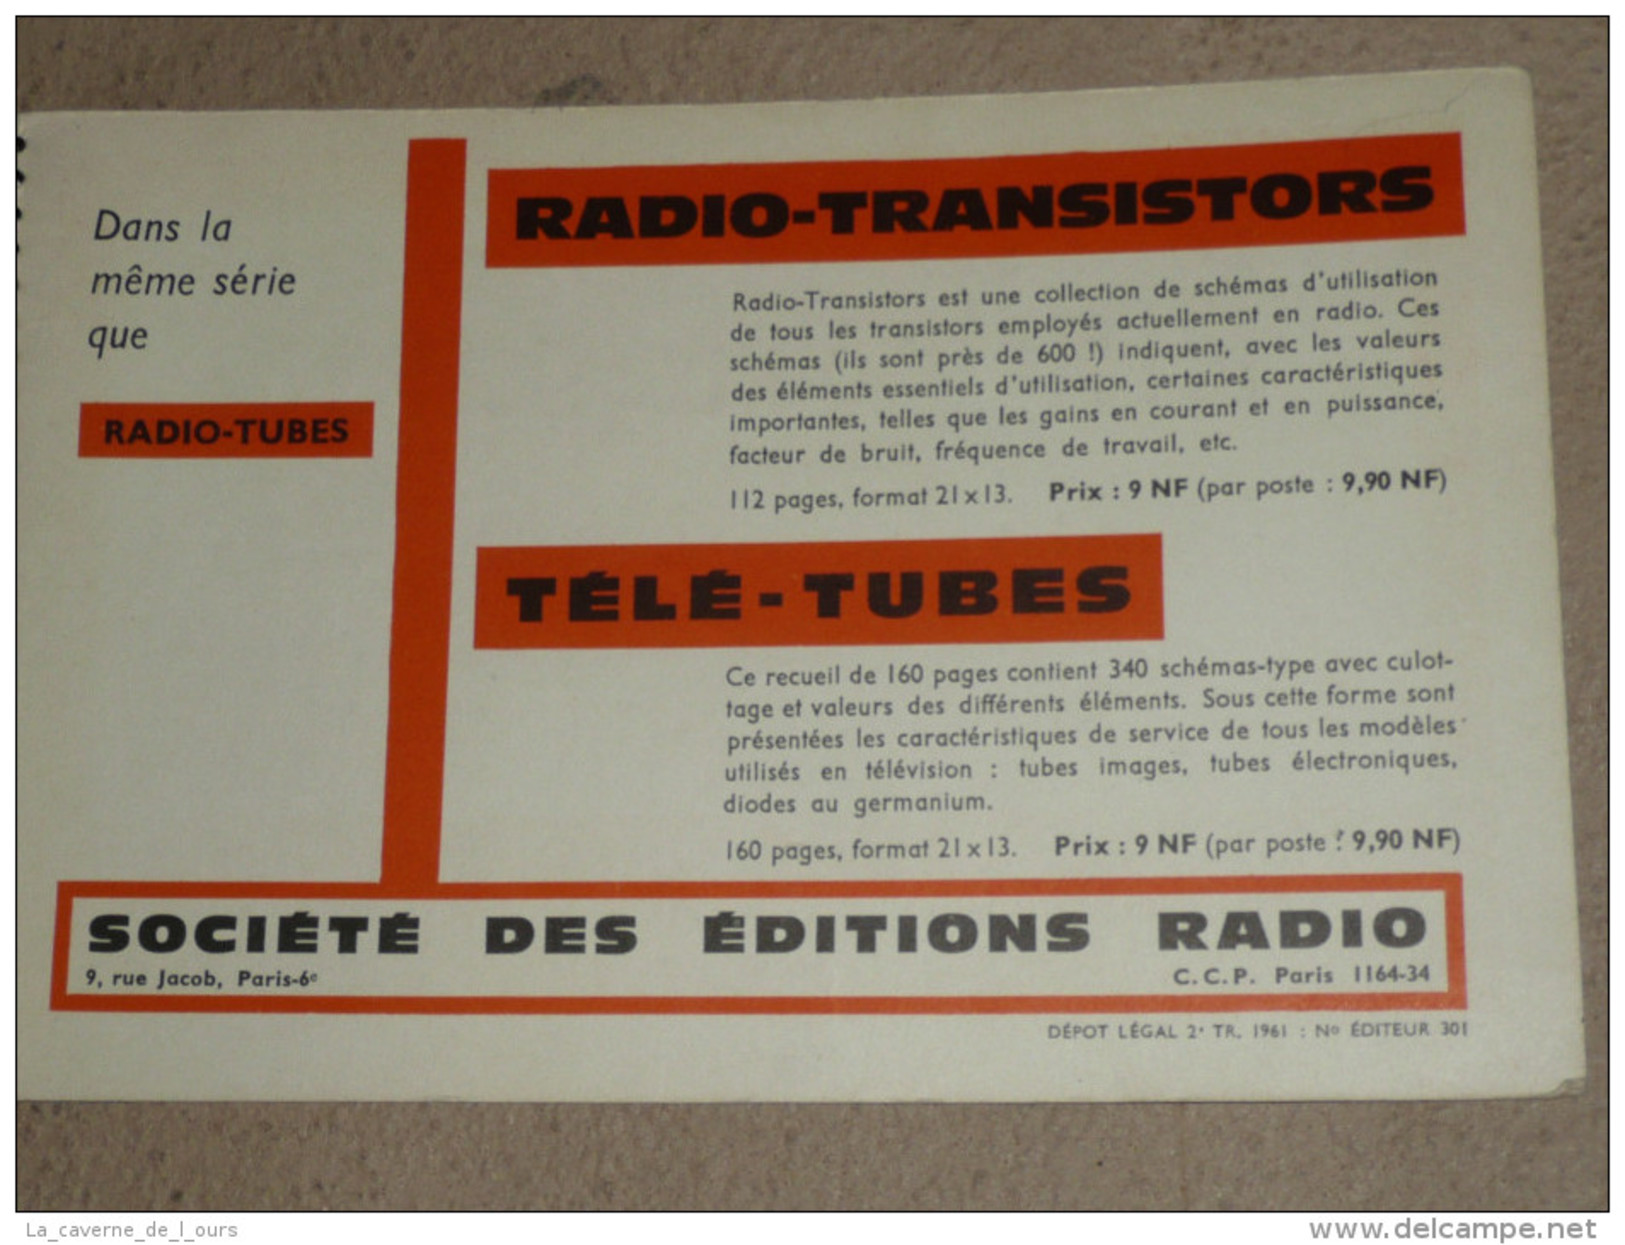 Rare ancien livre catalogue RADIO TUBES lampes transistors